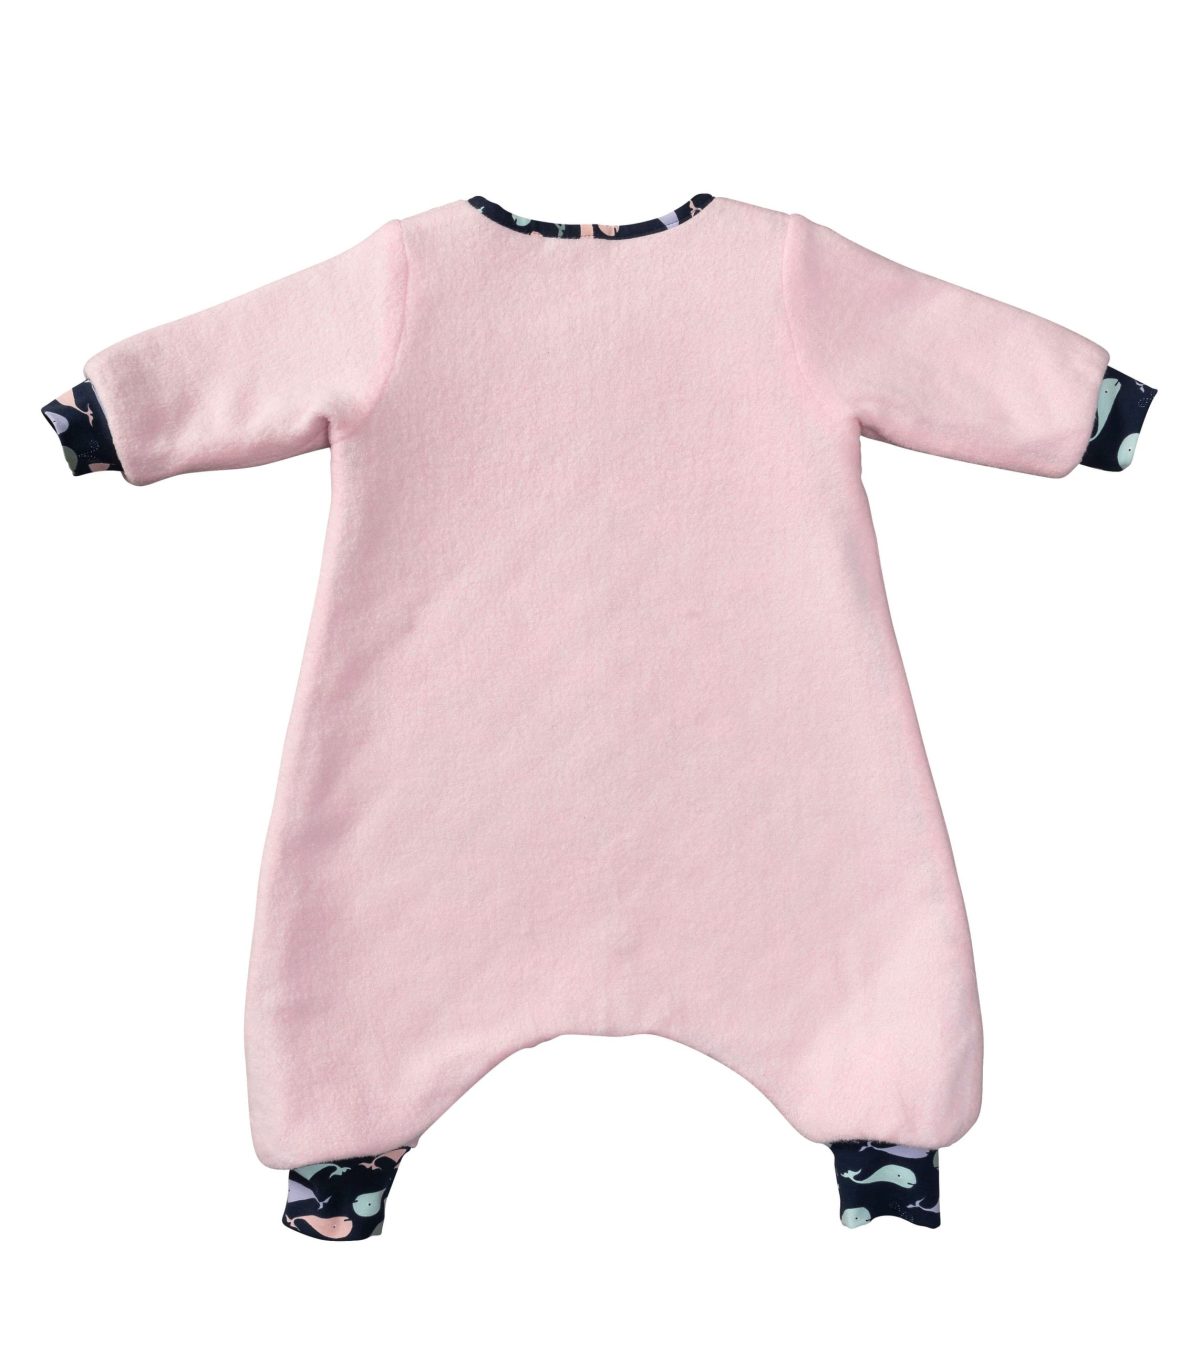 Burda Style Pattern 9298 Toddlers' Infants Sleeping Bag Or Jumpsuit